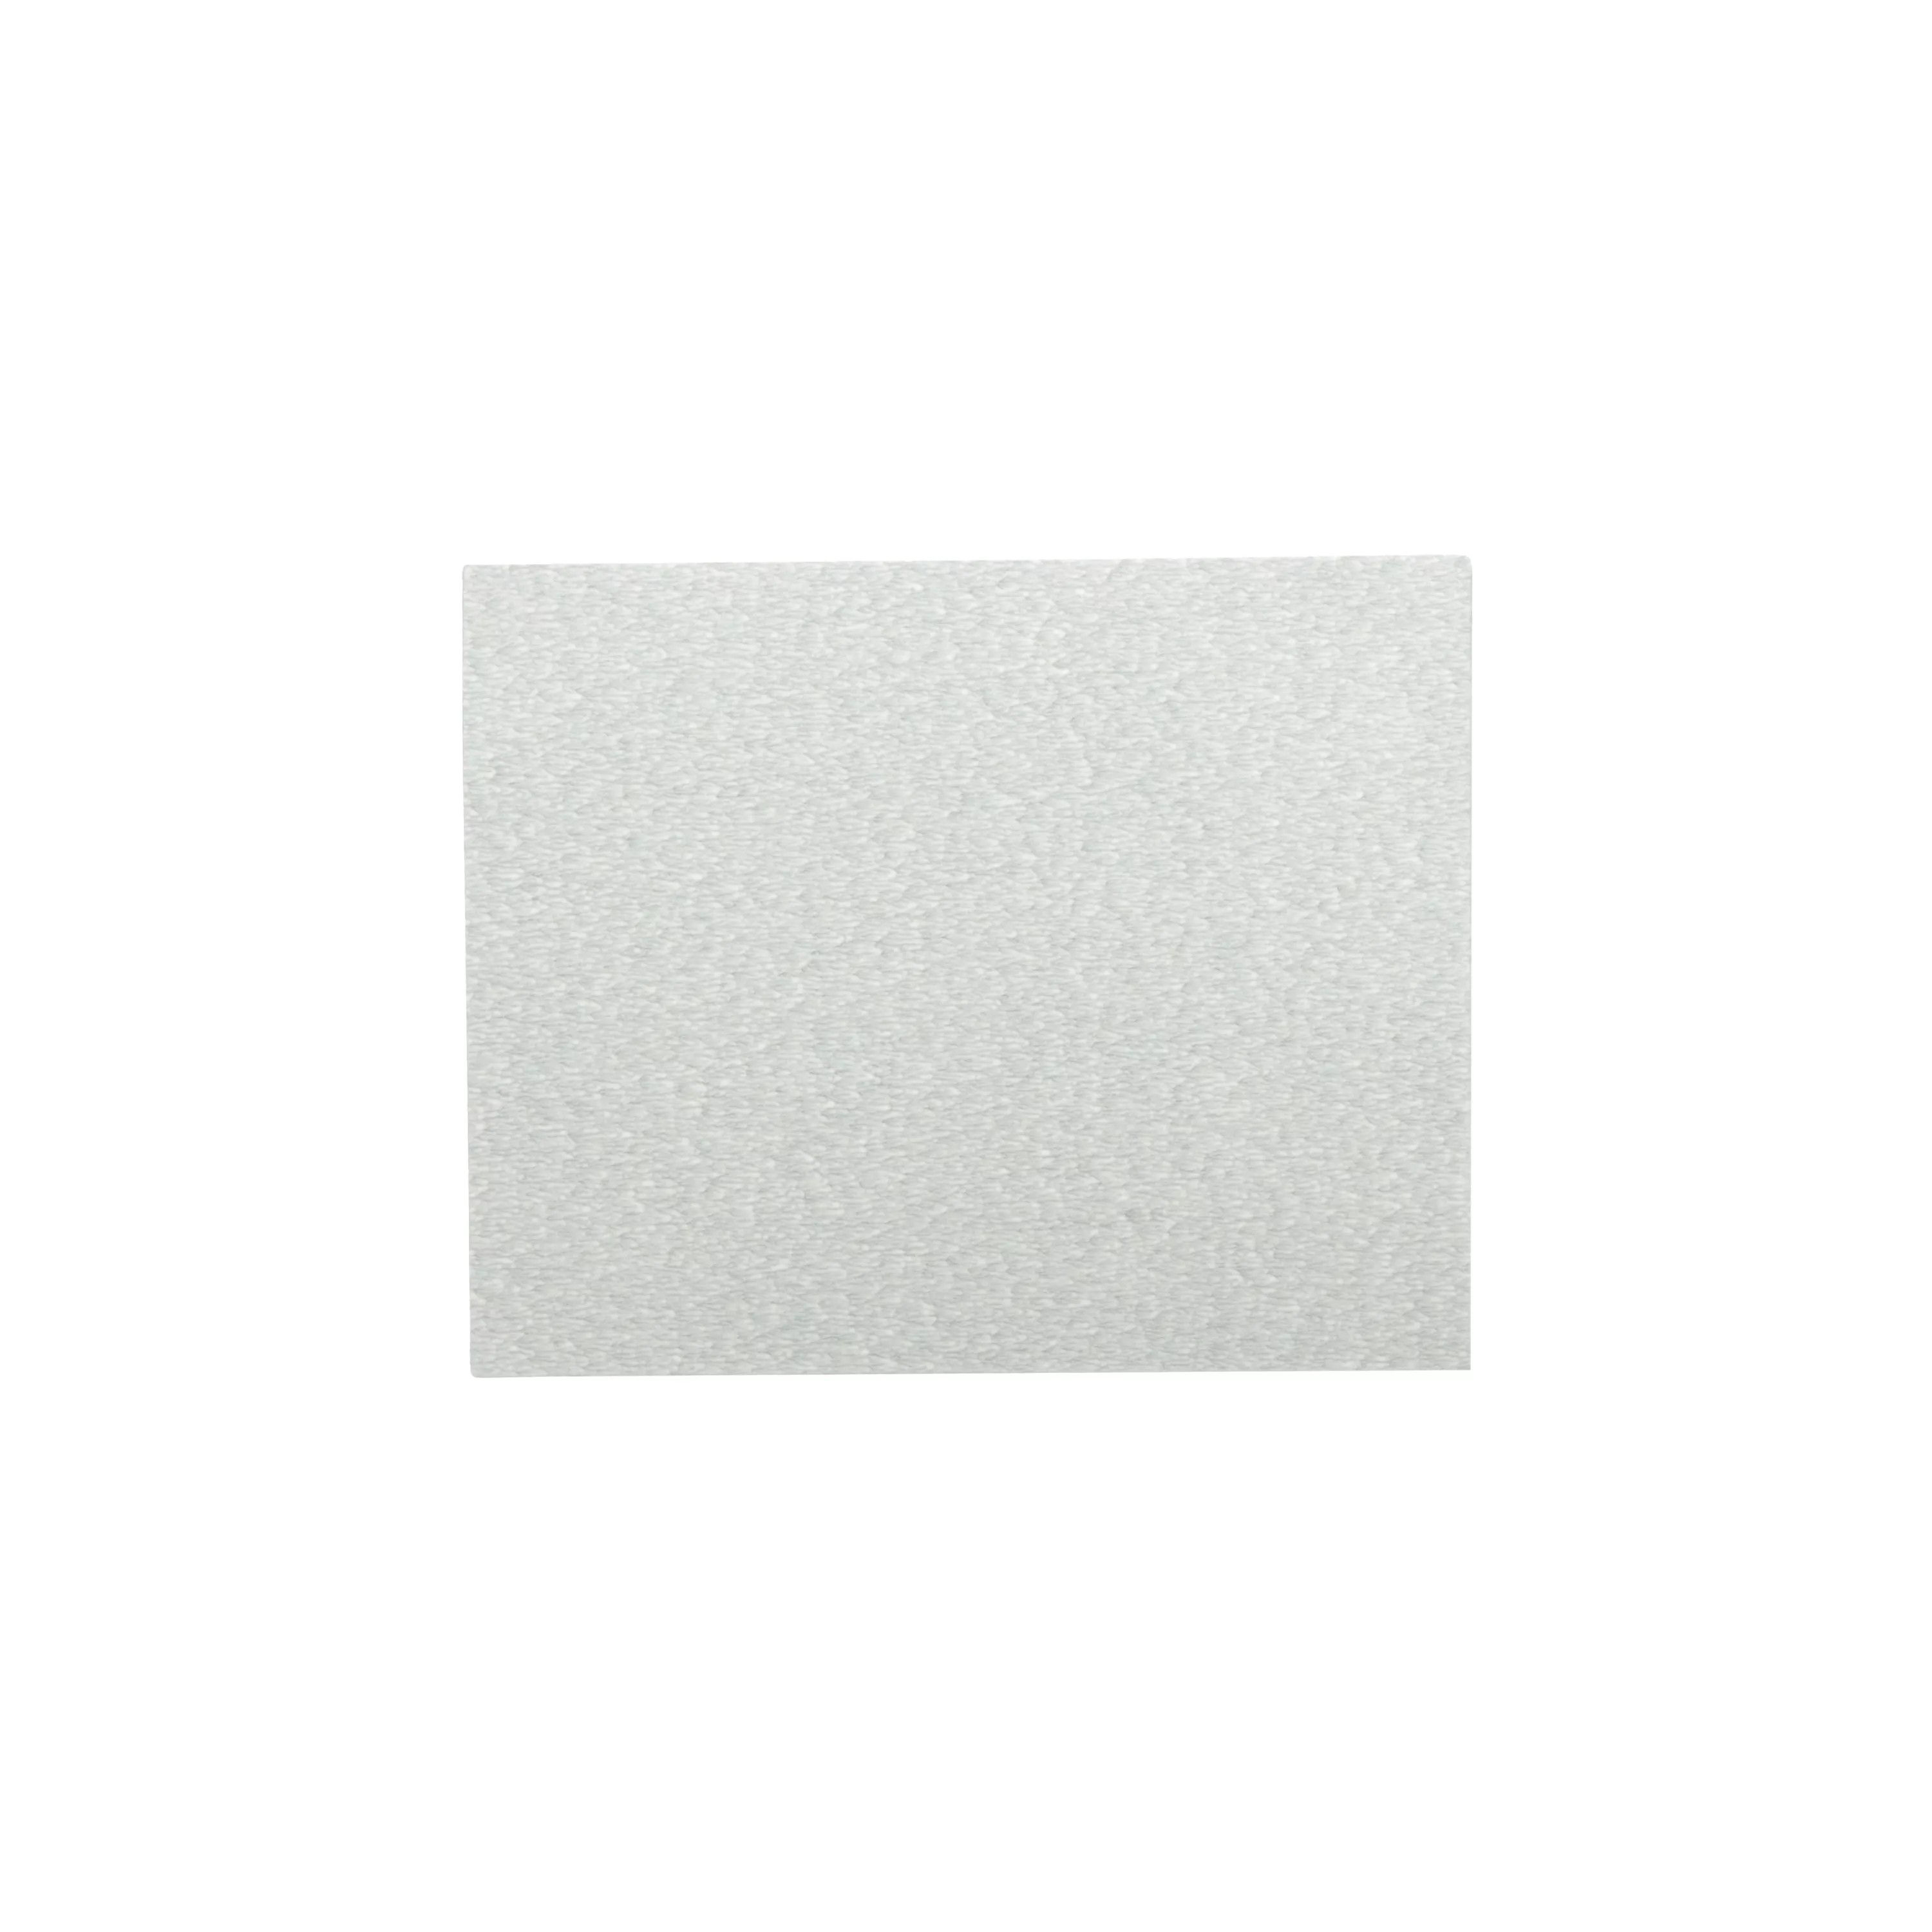 3M™ Paper Sheet 405U, 360 A-weight, 9 in x 11 in, 100/Carton, 1000
ea/Case